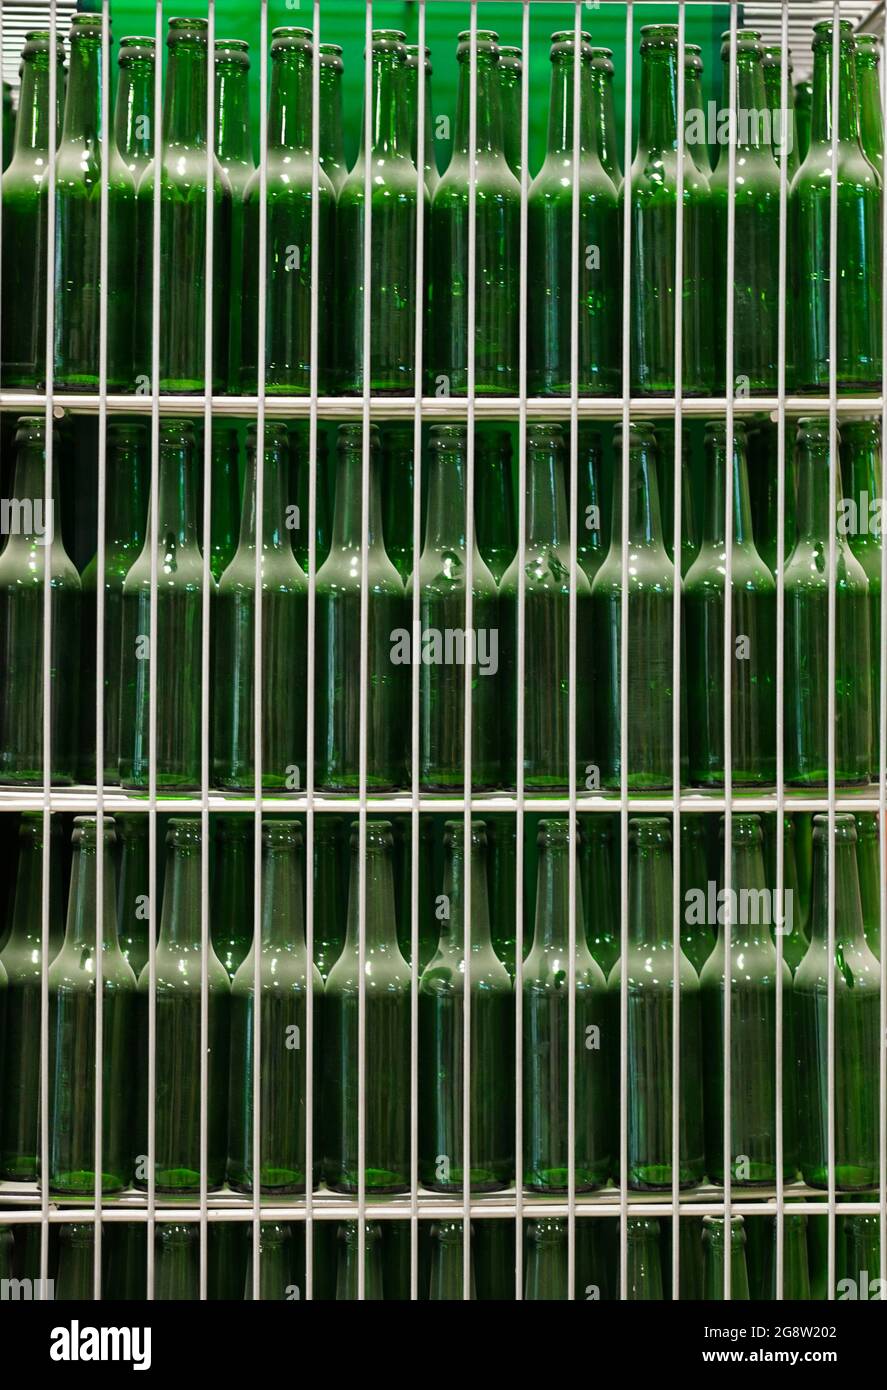 Viele transparente grüne staubige Bierglasflaschen in Reihe, aus nächster Nähe. Textur der Glasflasche... Stockfoto